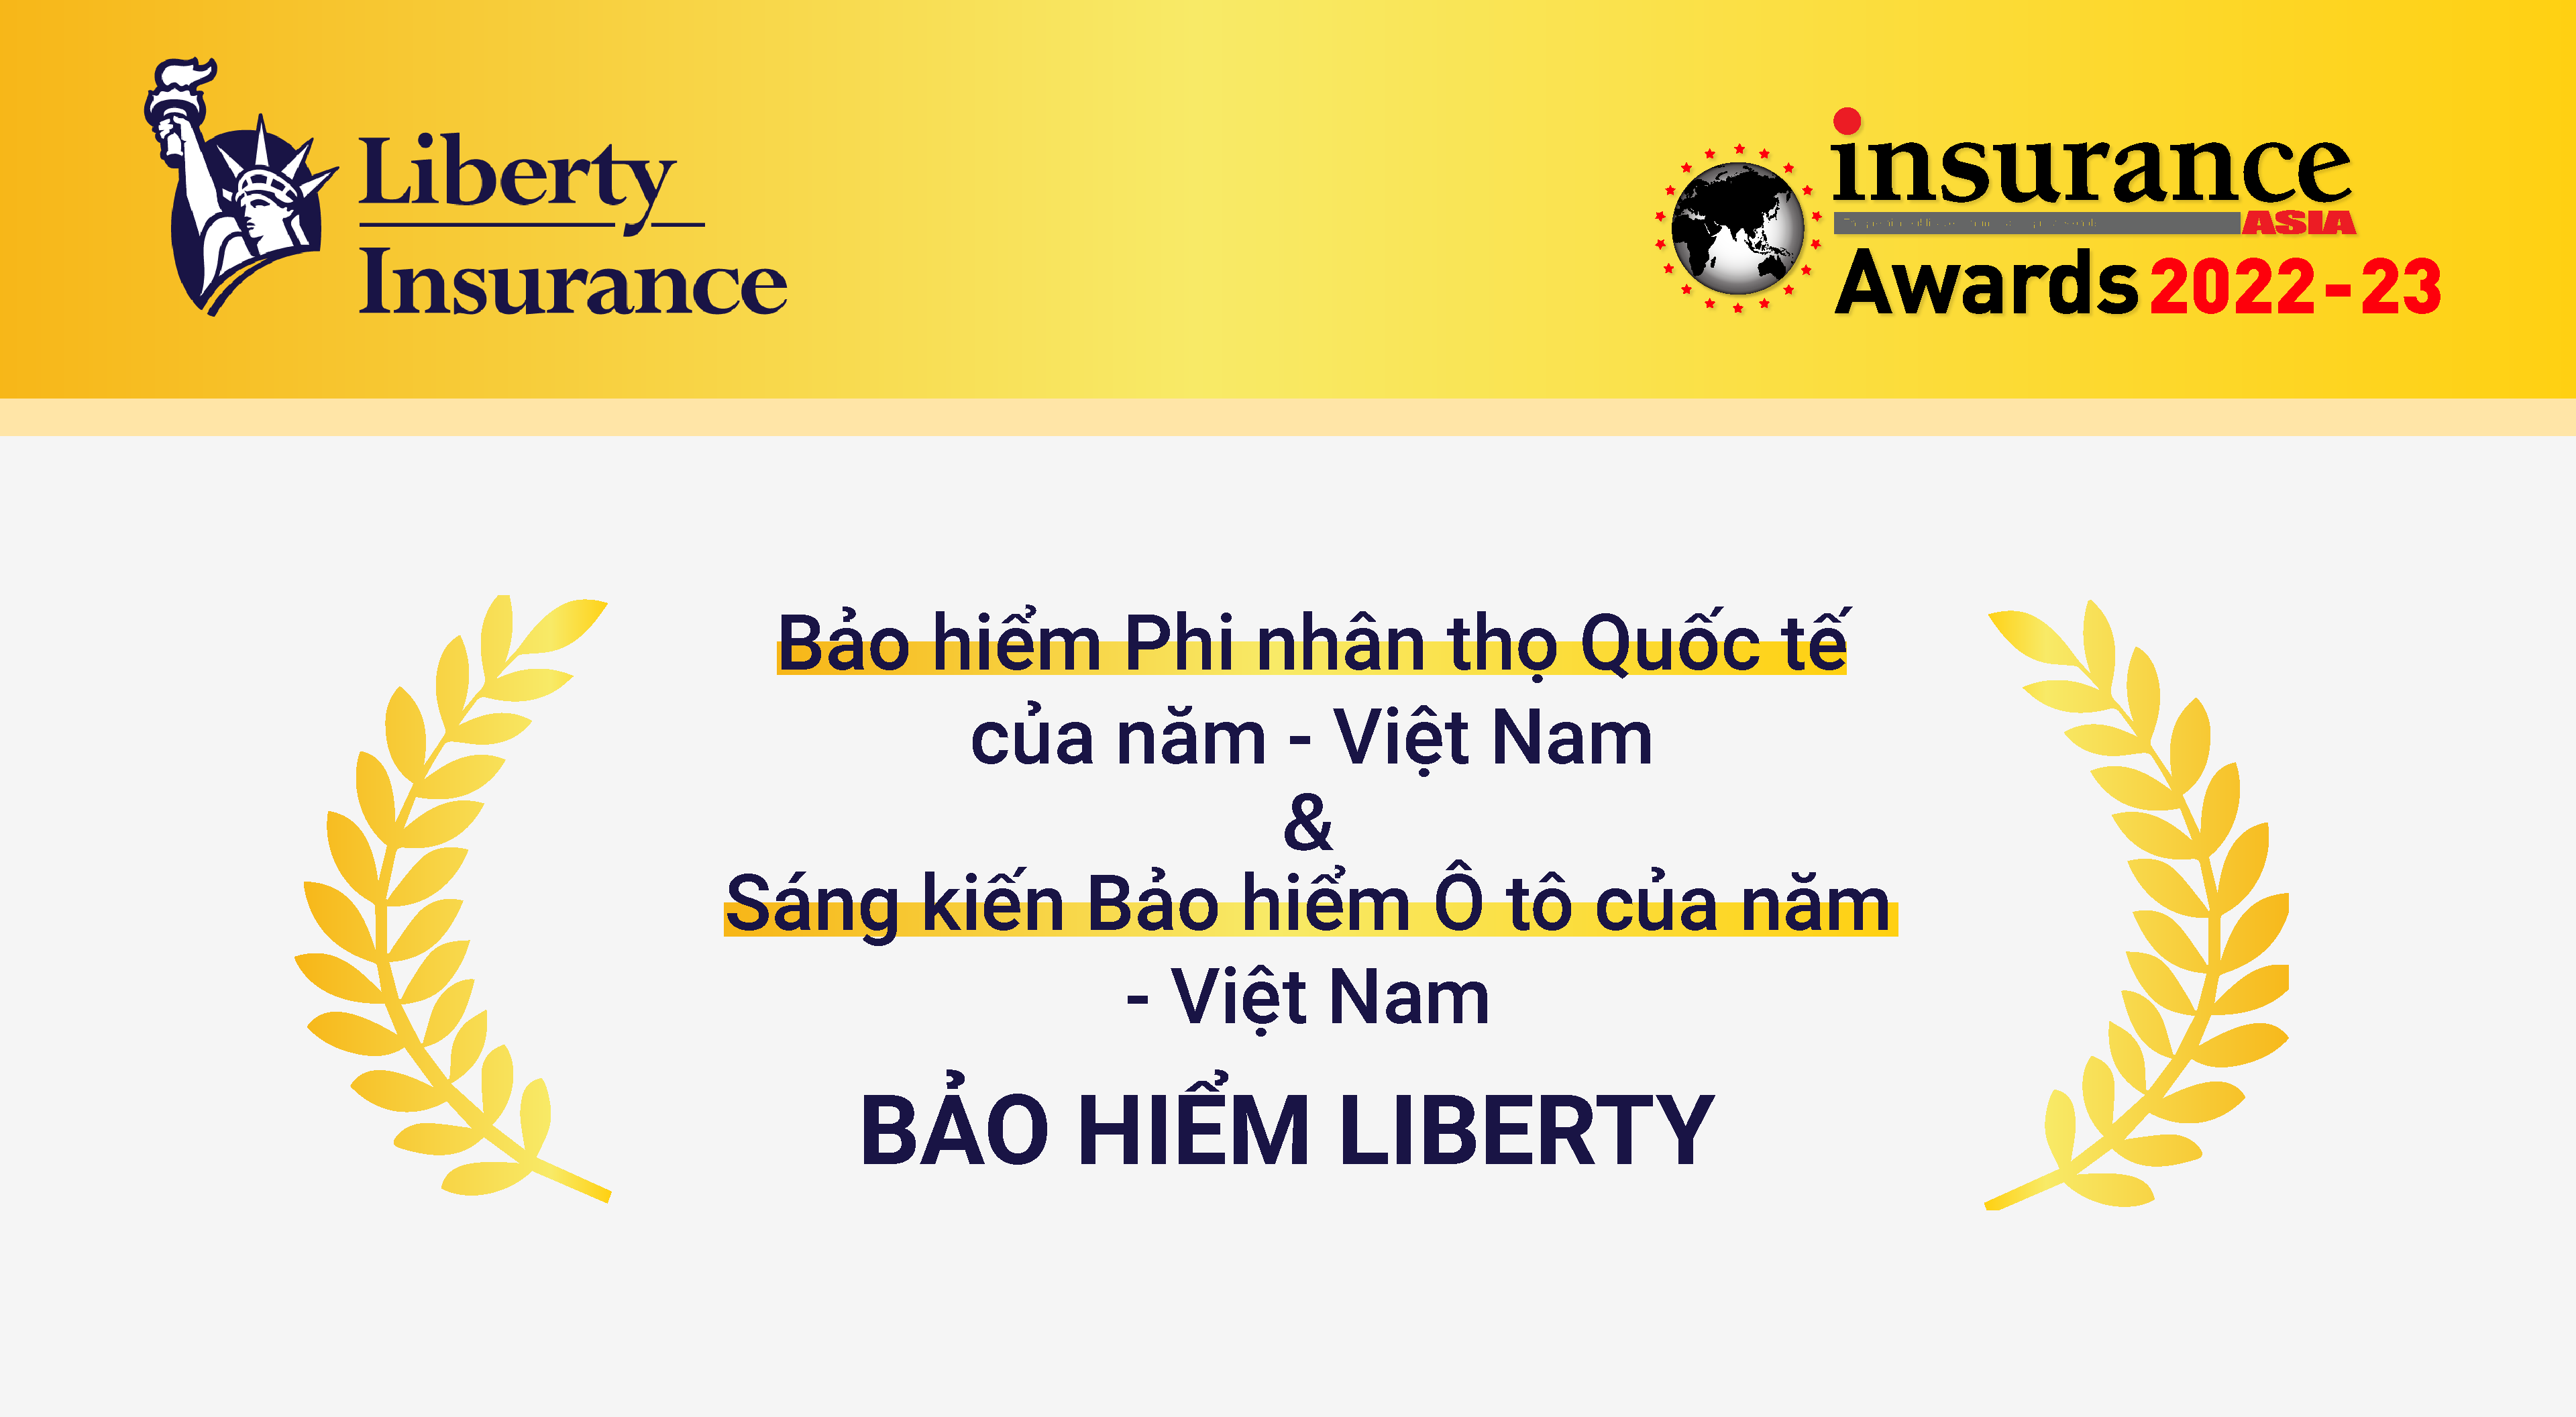 Bảo hiểm Liberty với 2 lần đạt cú đúp giải thưởng tại IAA